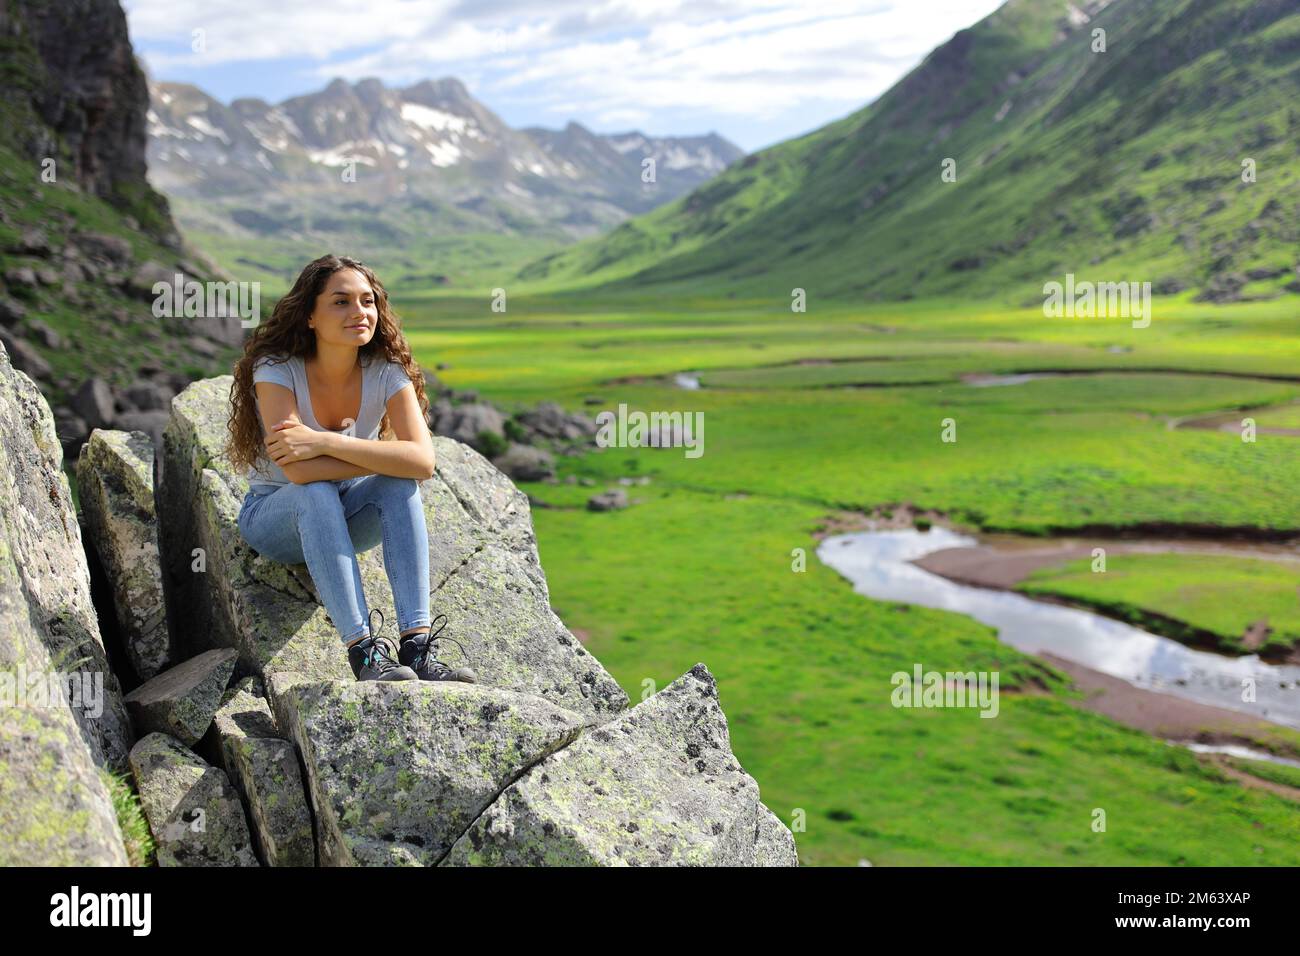 Eine glückliche Frau, die auf einer Klippe sitzt und eine wunderschöne Aussicht auf die Berge in Betracht zieht Stockfoto